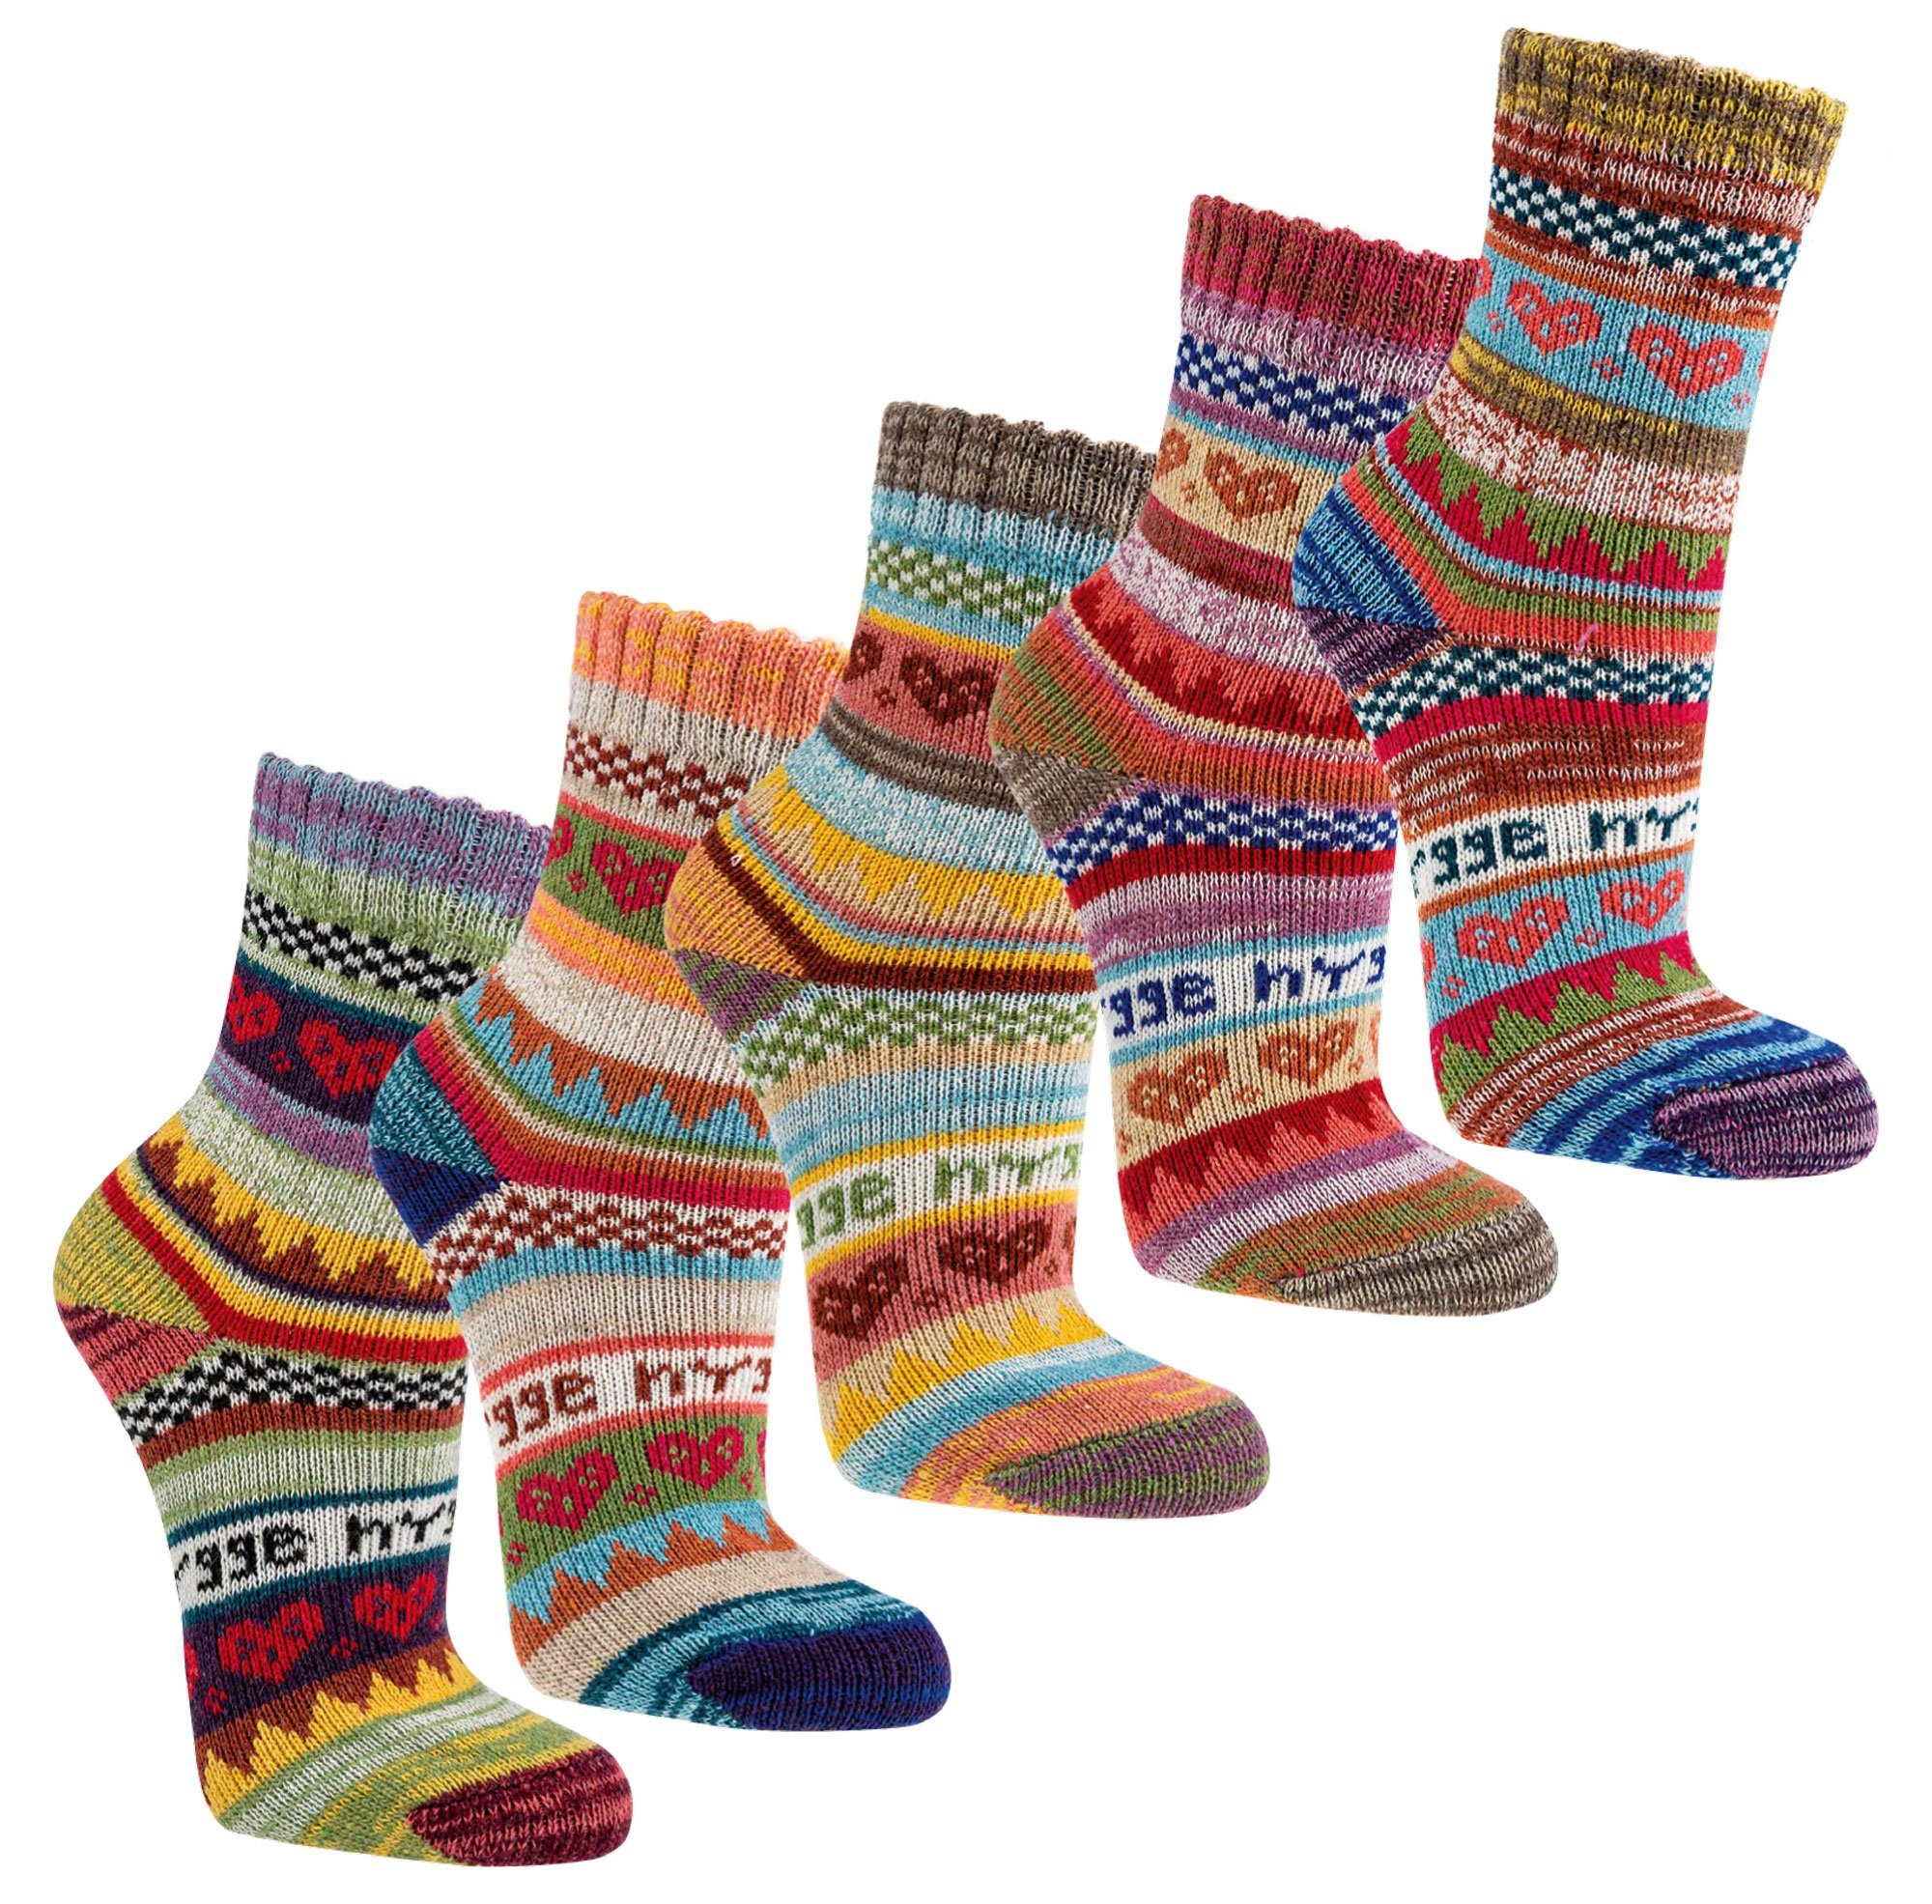 Wowerat Norwegersocken Bunte Hygge Norweger Socken Baumwolle mit schönem Muster Kinder (3 Paar) buntes Hygge Muster | Wintersocken